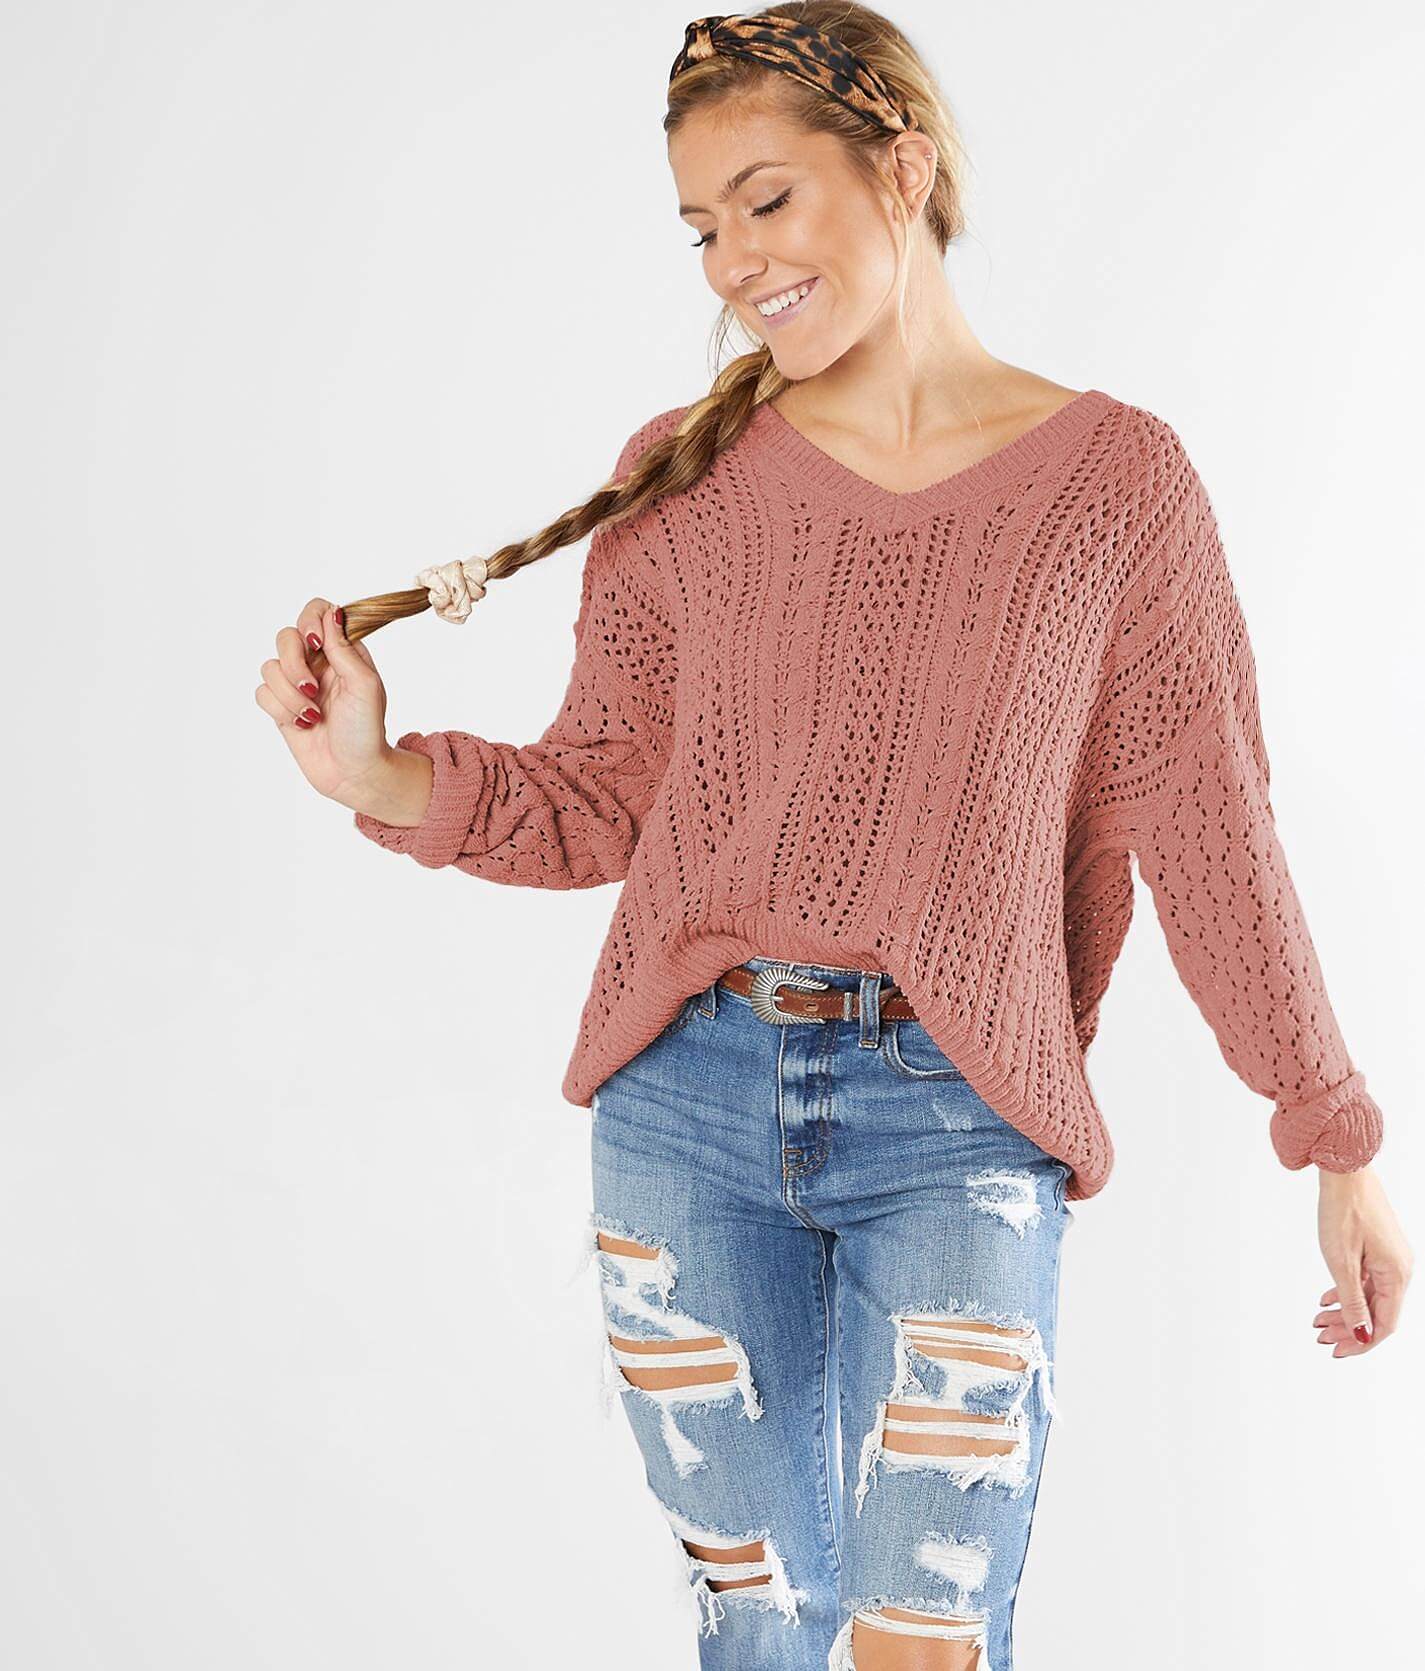 dusty rose sweater